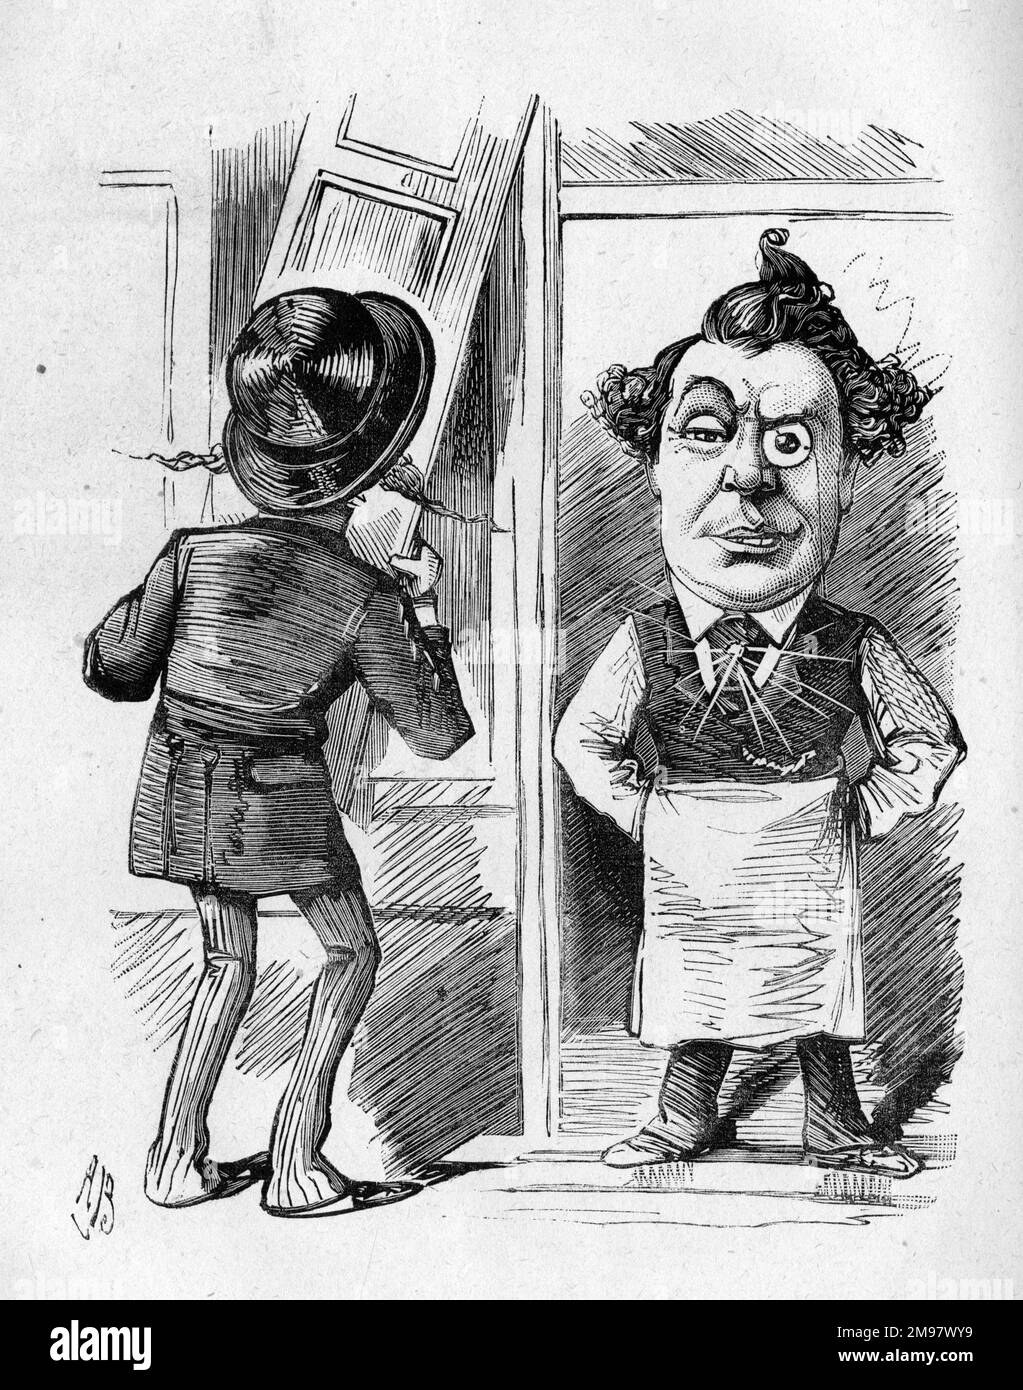 Cartoon von John Lawrence Toole (1830-1906), englischer Comic-Schauspieler, Theatermanager und Produzent -- nun, George, runter mit den Fensterläden, oder die Öffentlichkeit wird denken, dass wir uns aus dem Geschäft zurückgezogen haben. Stockfoto